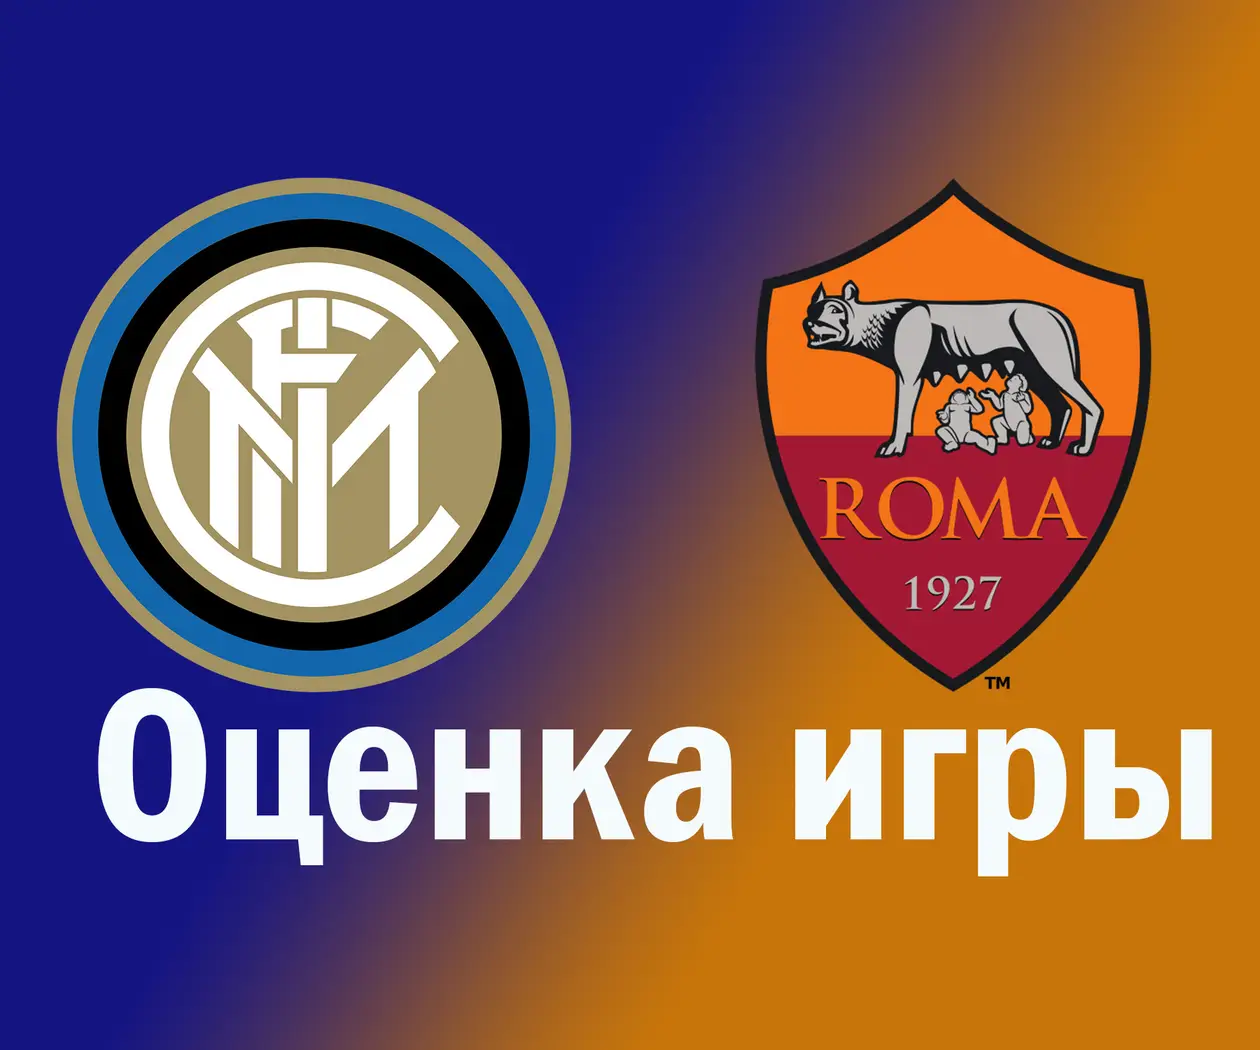 Оценка игры: Интер – Рома (Серия А)